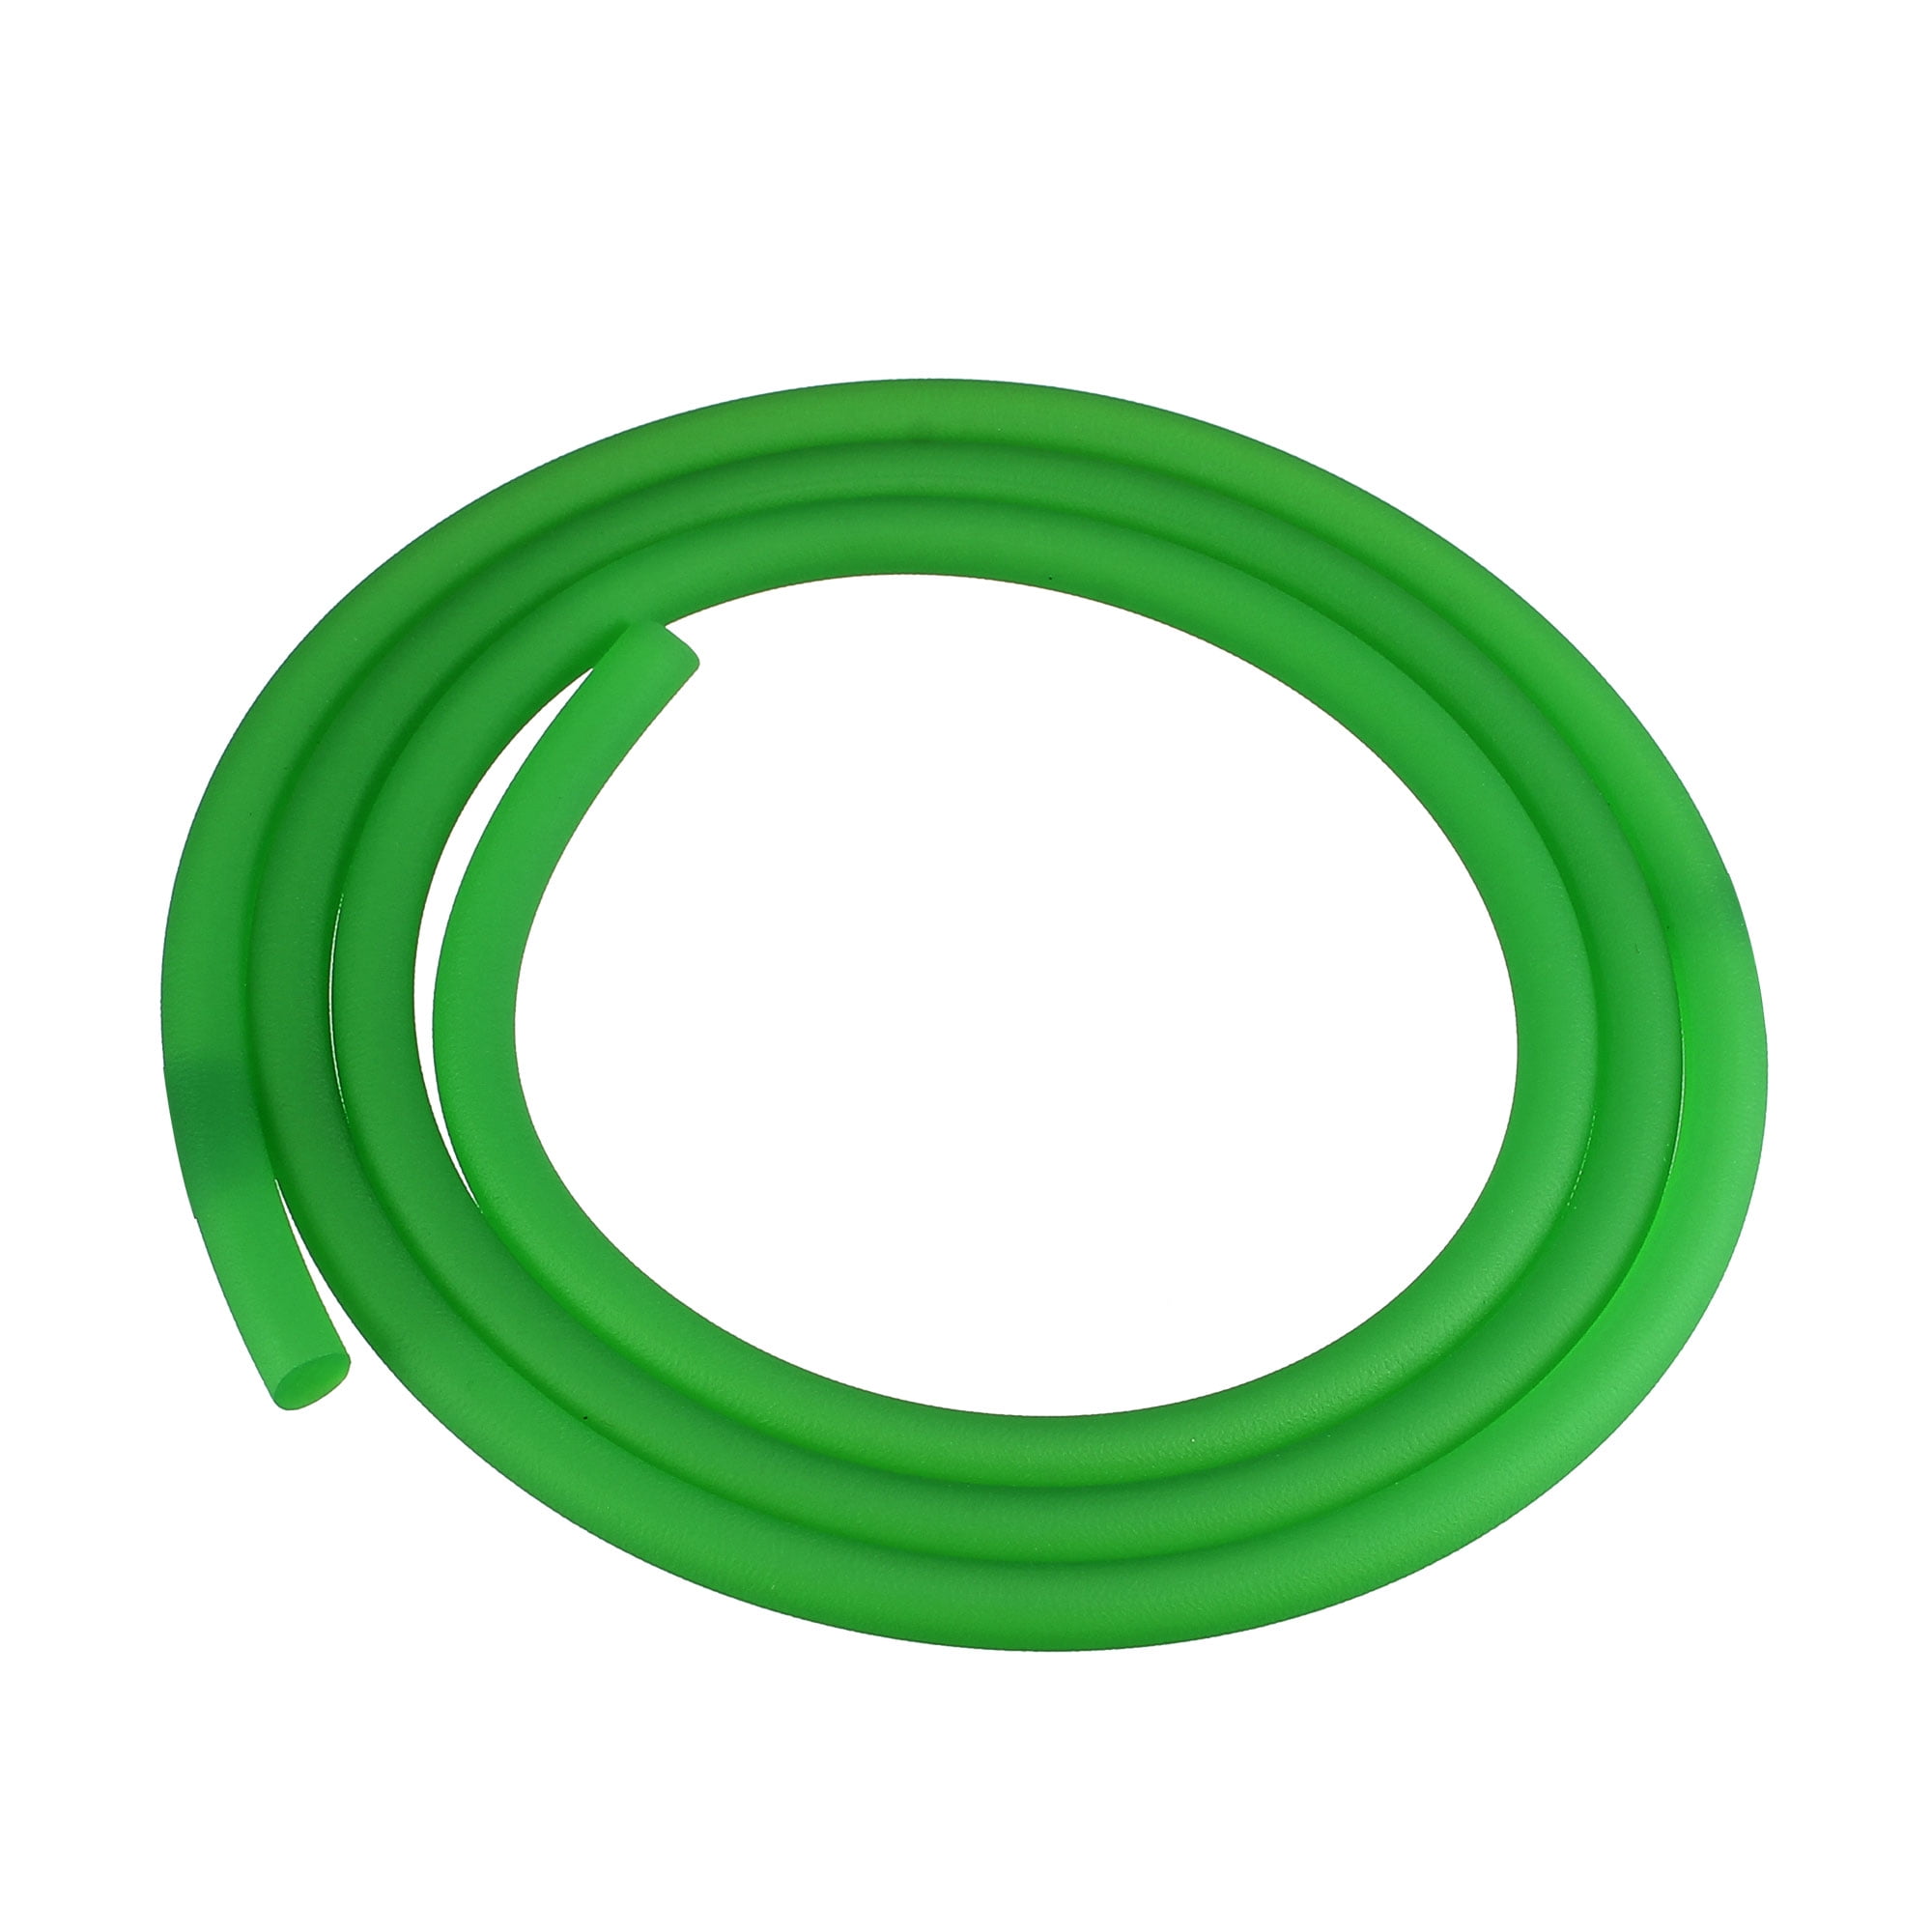 3ft 7mm PU Transmission Round Belt High Performance Urethane Belts Green for Conveyor Belt Dryer